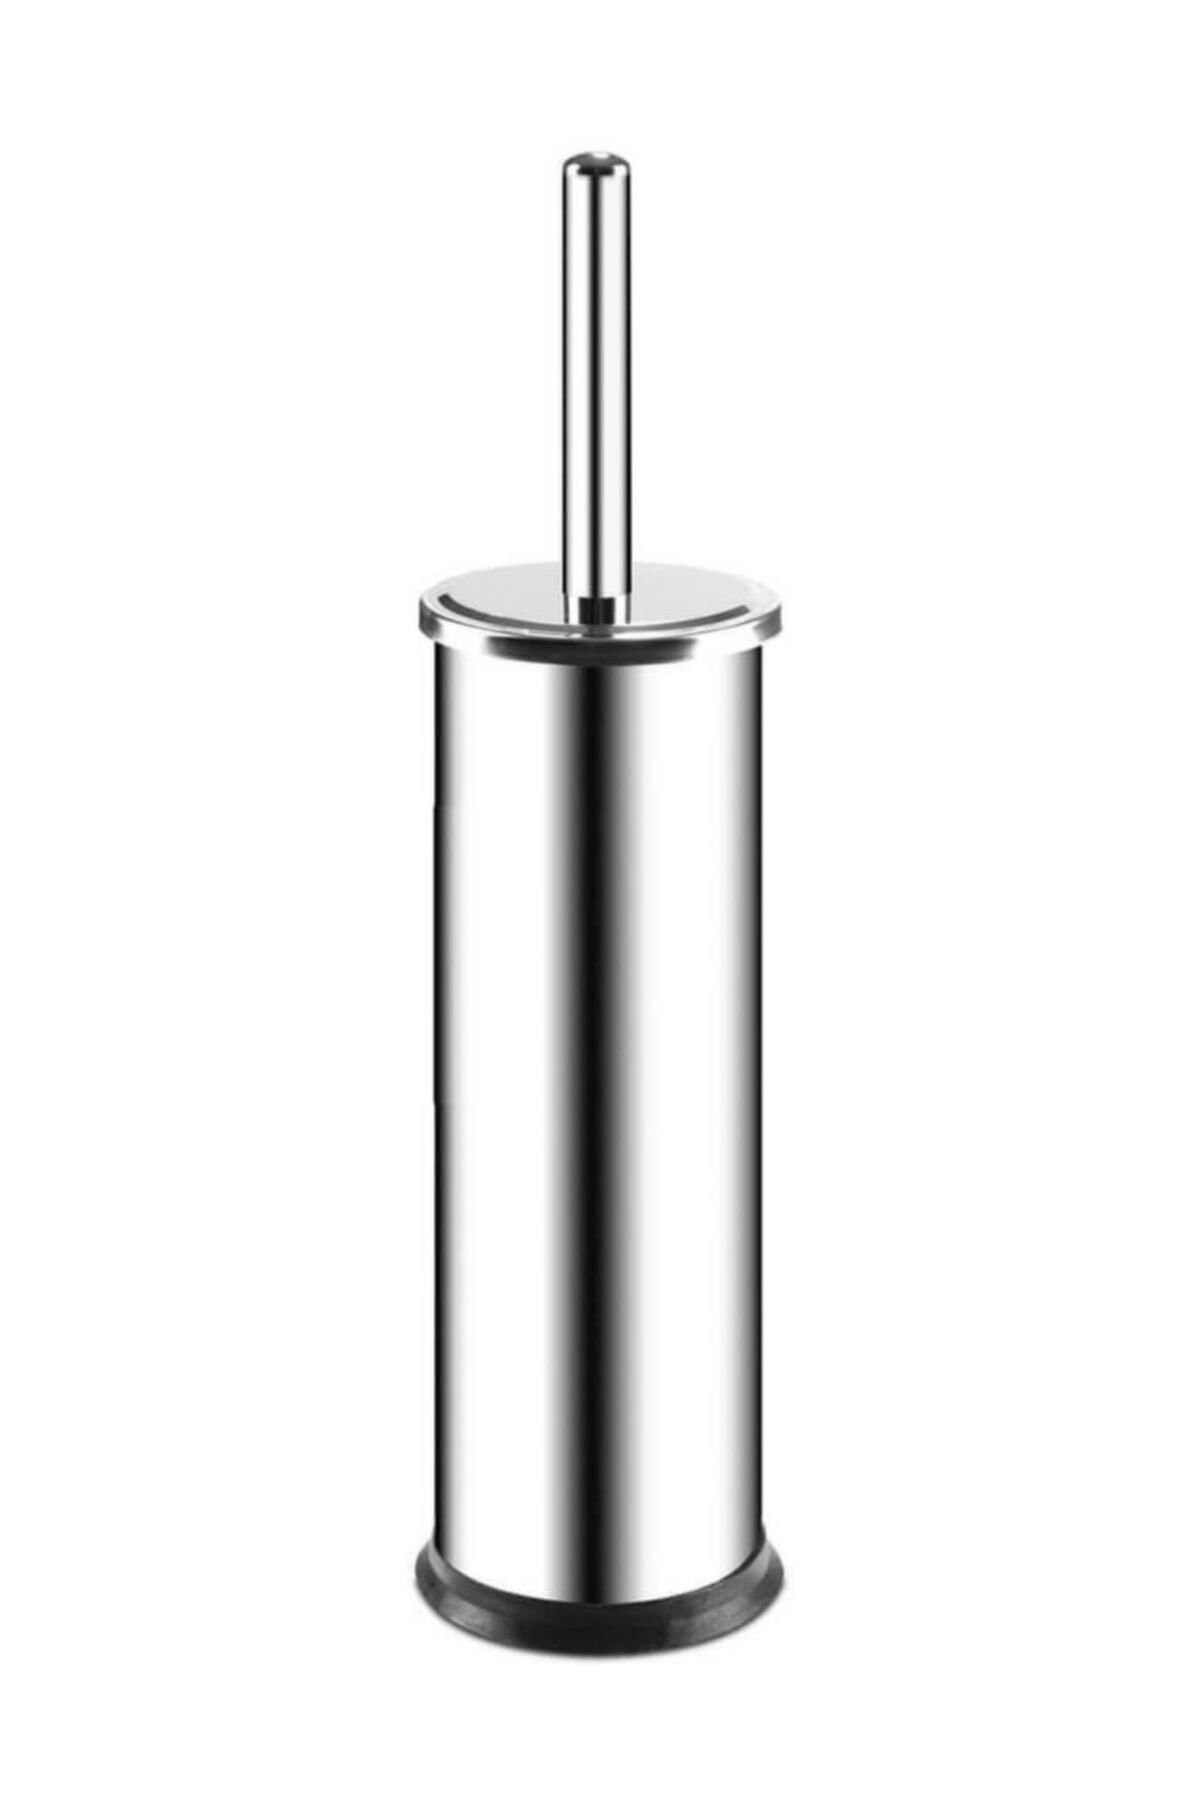 Arı Metal 7065 Klozet Wc Fırçası Plastik Taban Paslanmaz Çelik